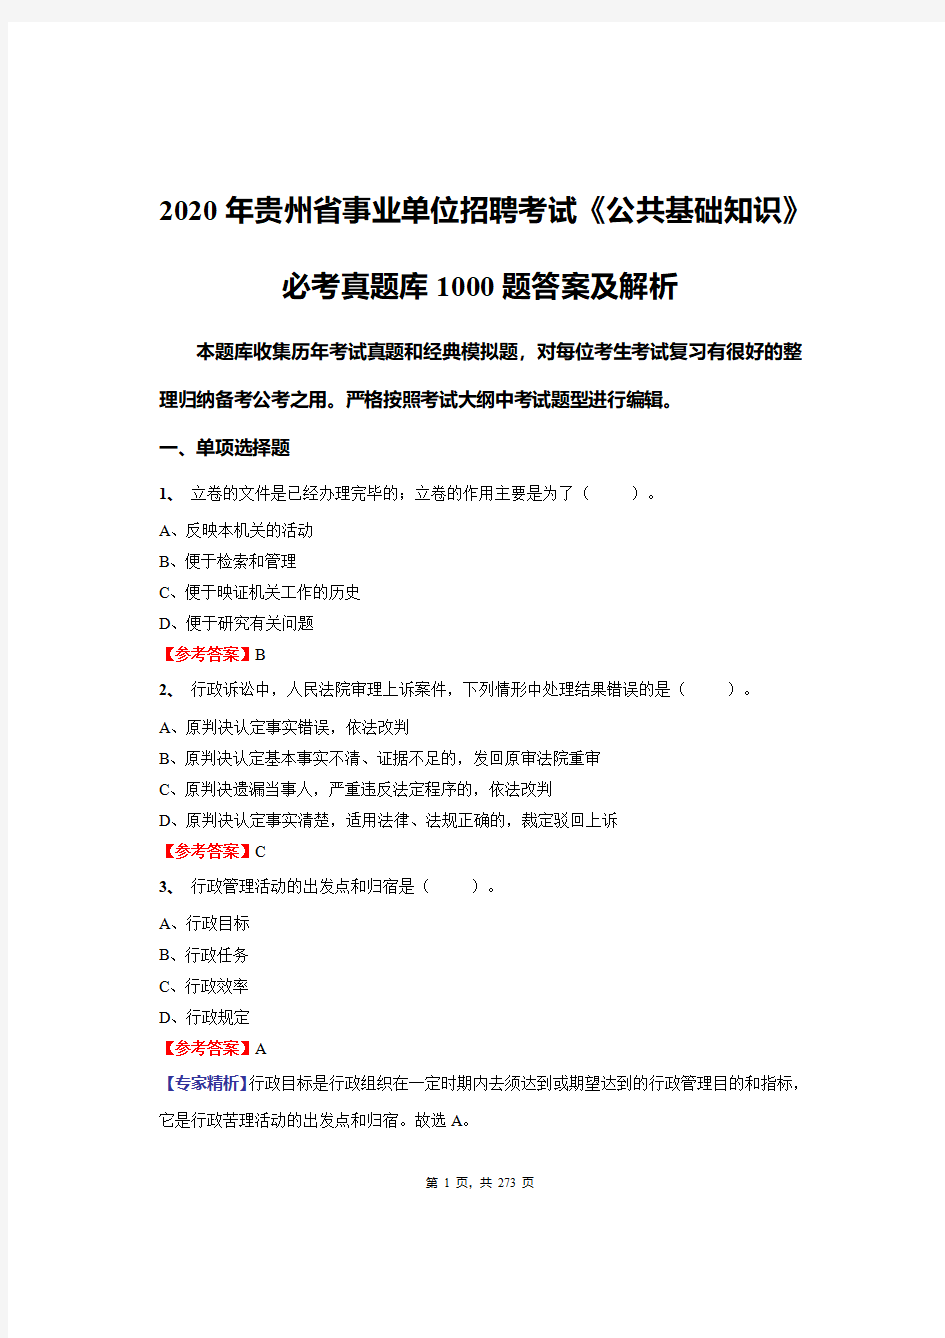 2020年贵州省事业单位招聘考试《公共基础知识》必做真题库1000题答案及解析 (1)